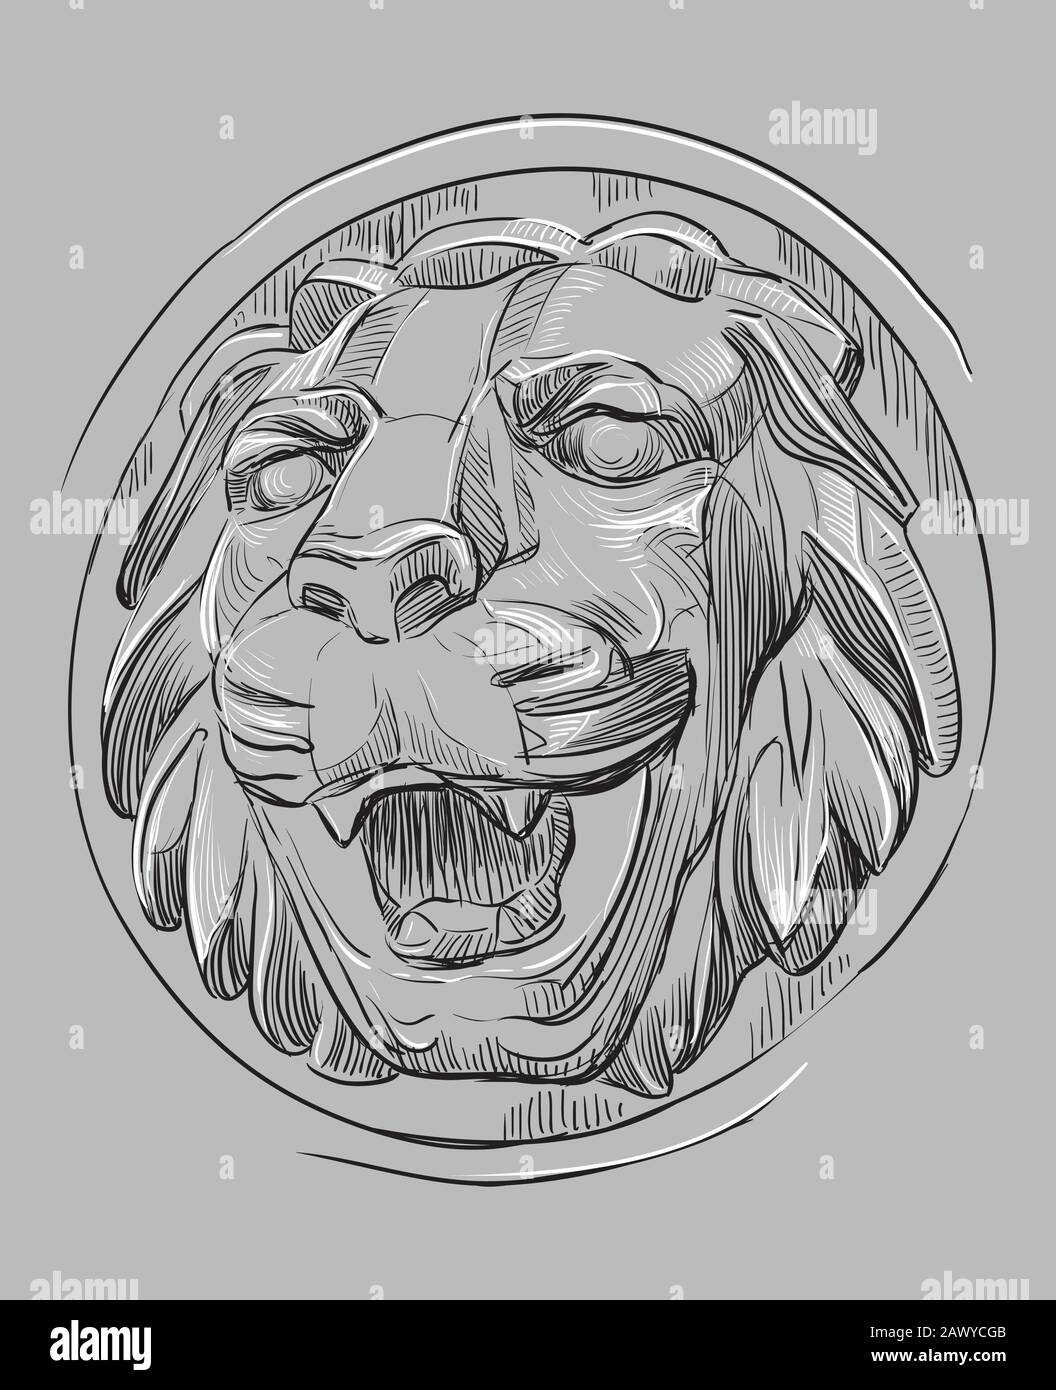 Antico bassorilievo in pietra a forma di testa di leone a bocca aperta, disegno vettoriale a mano in colori bianco e nero isolato su bac grigio Illustrazione Vettoriale